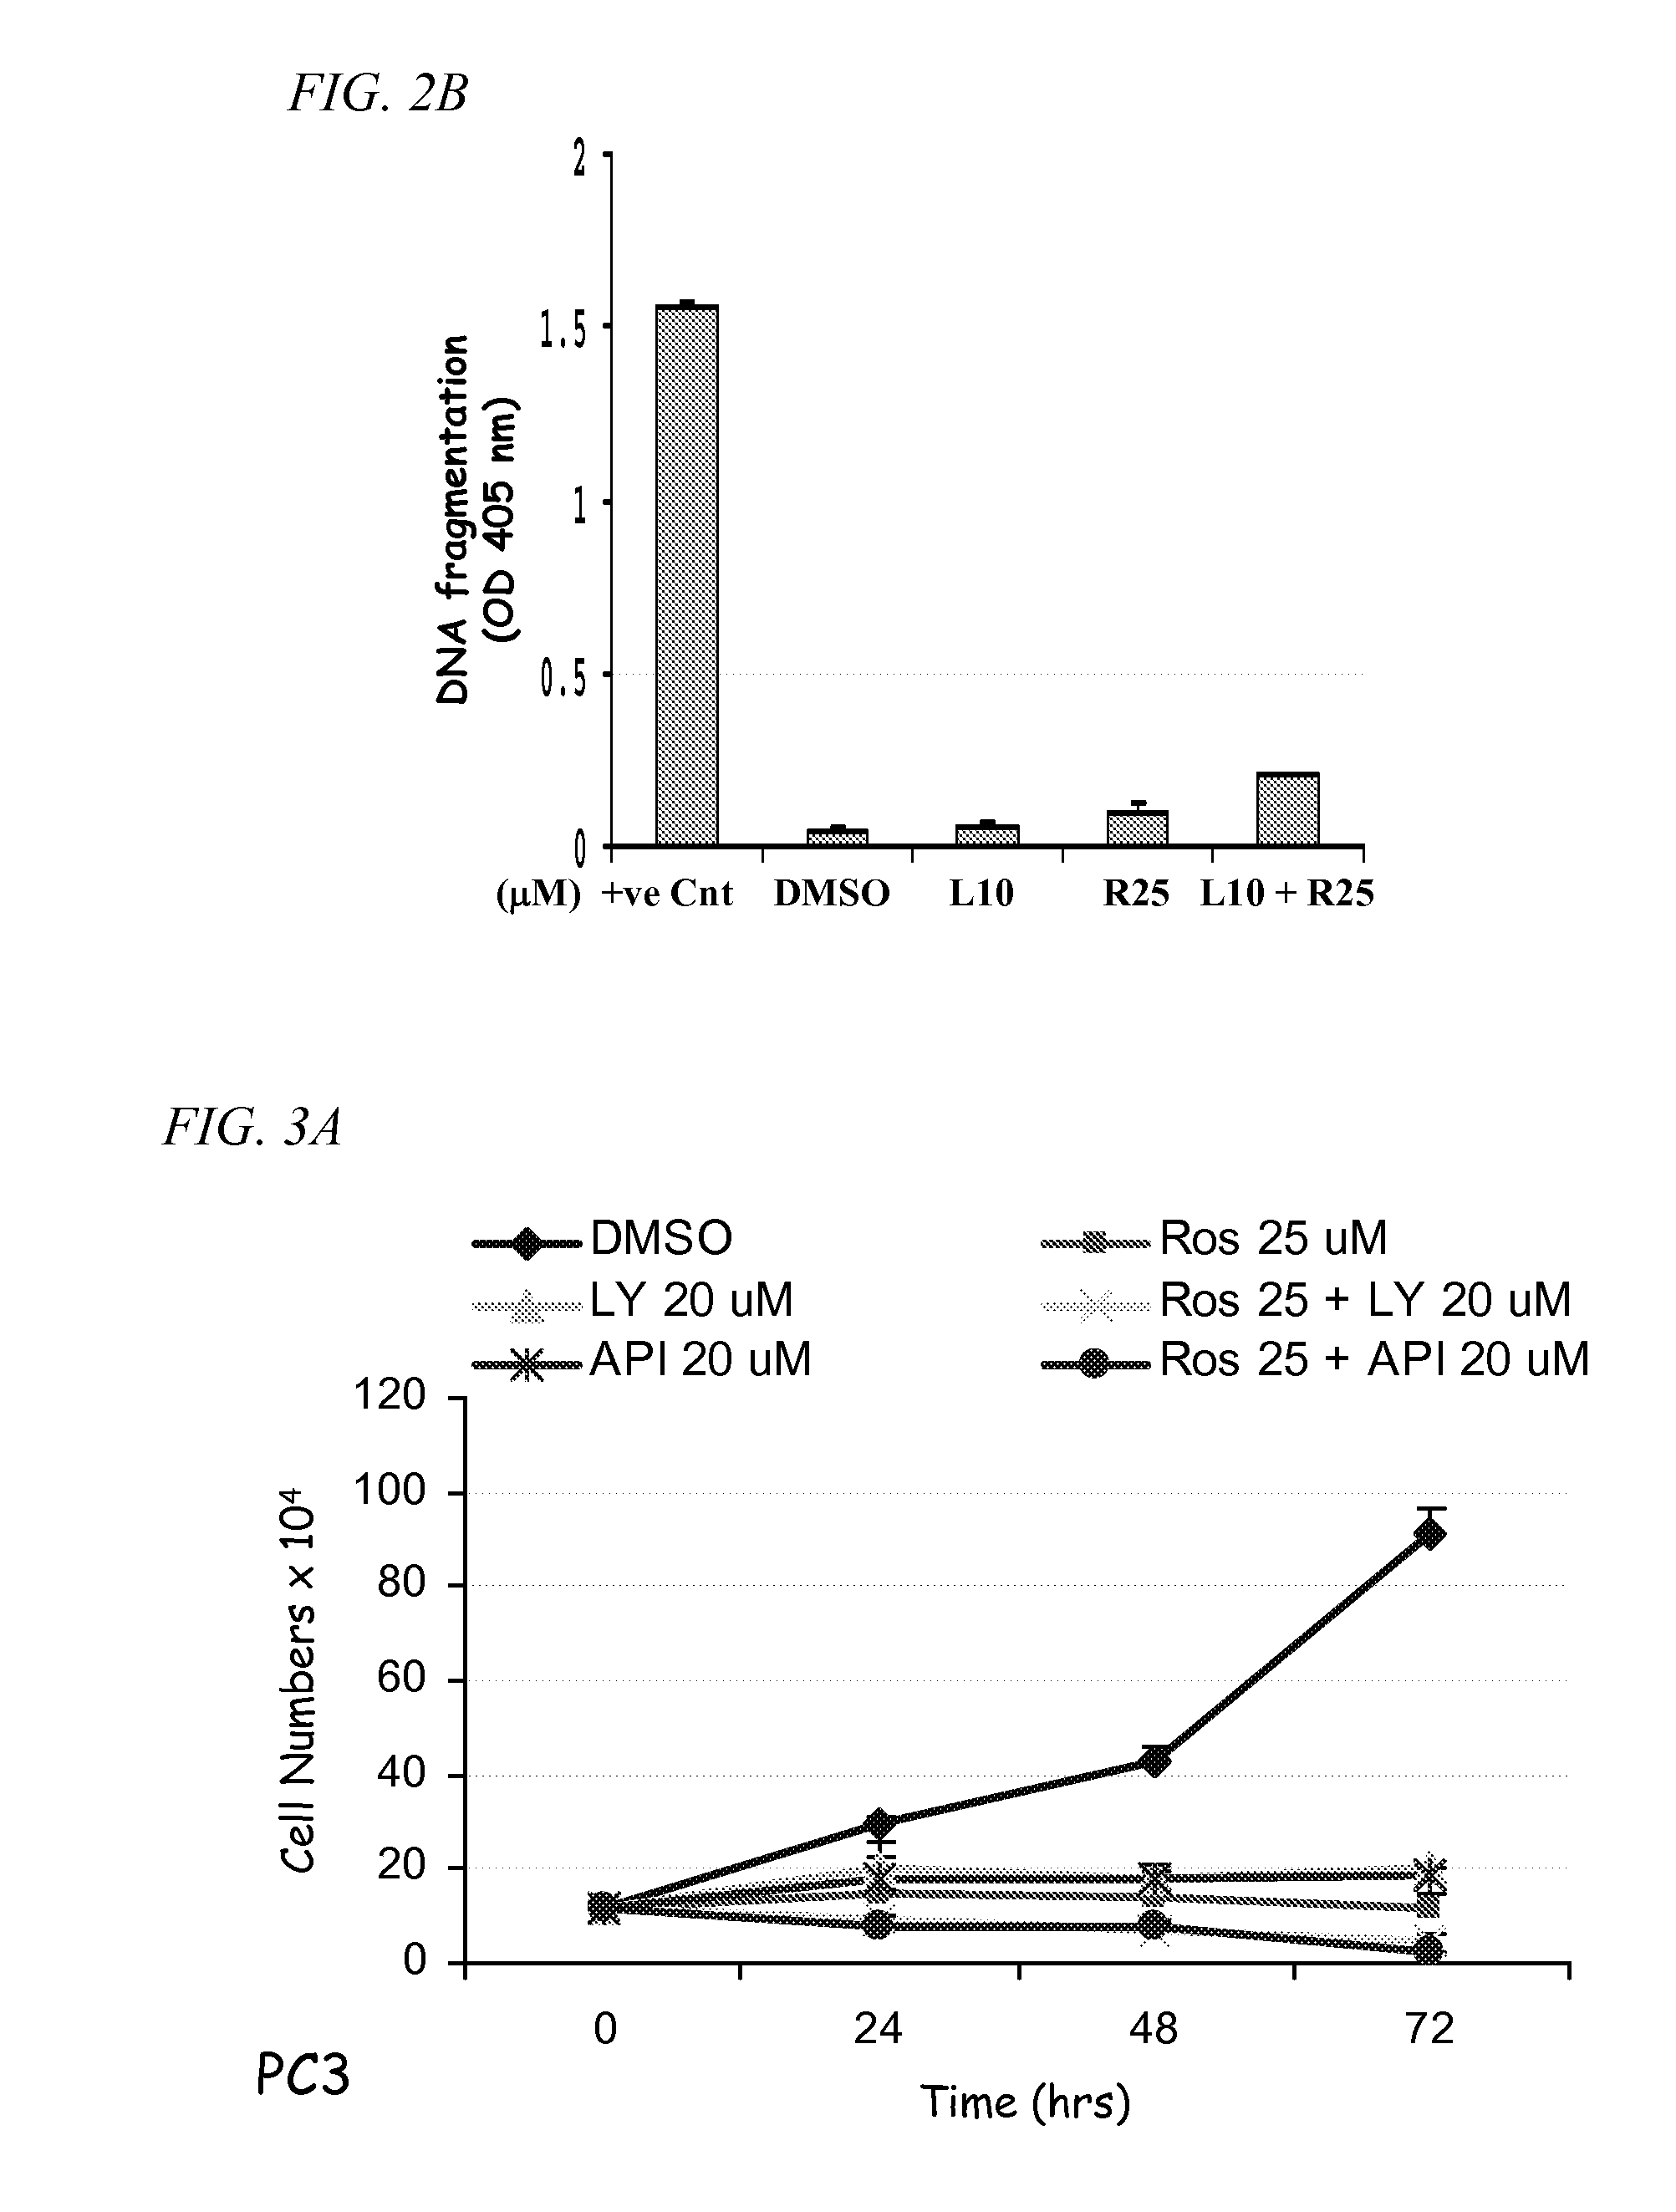 PI3K-Akt Pathway Inhibitors